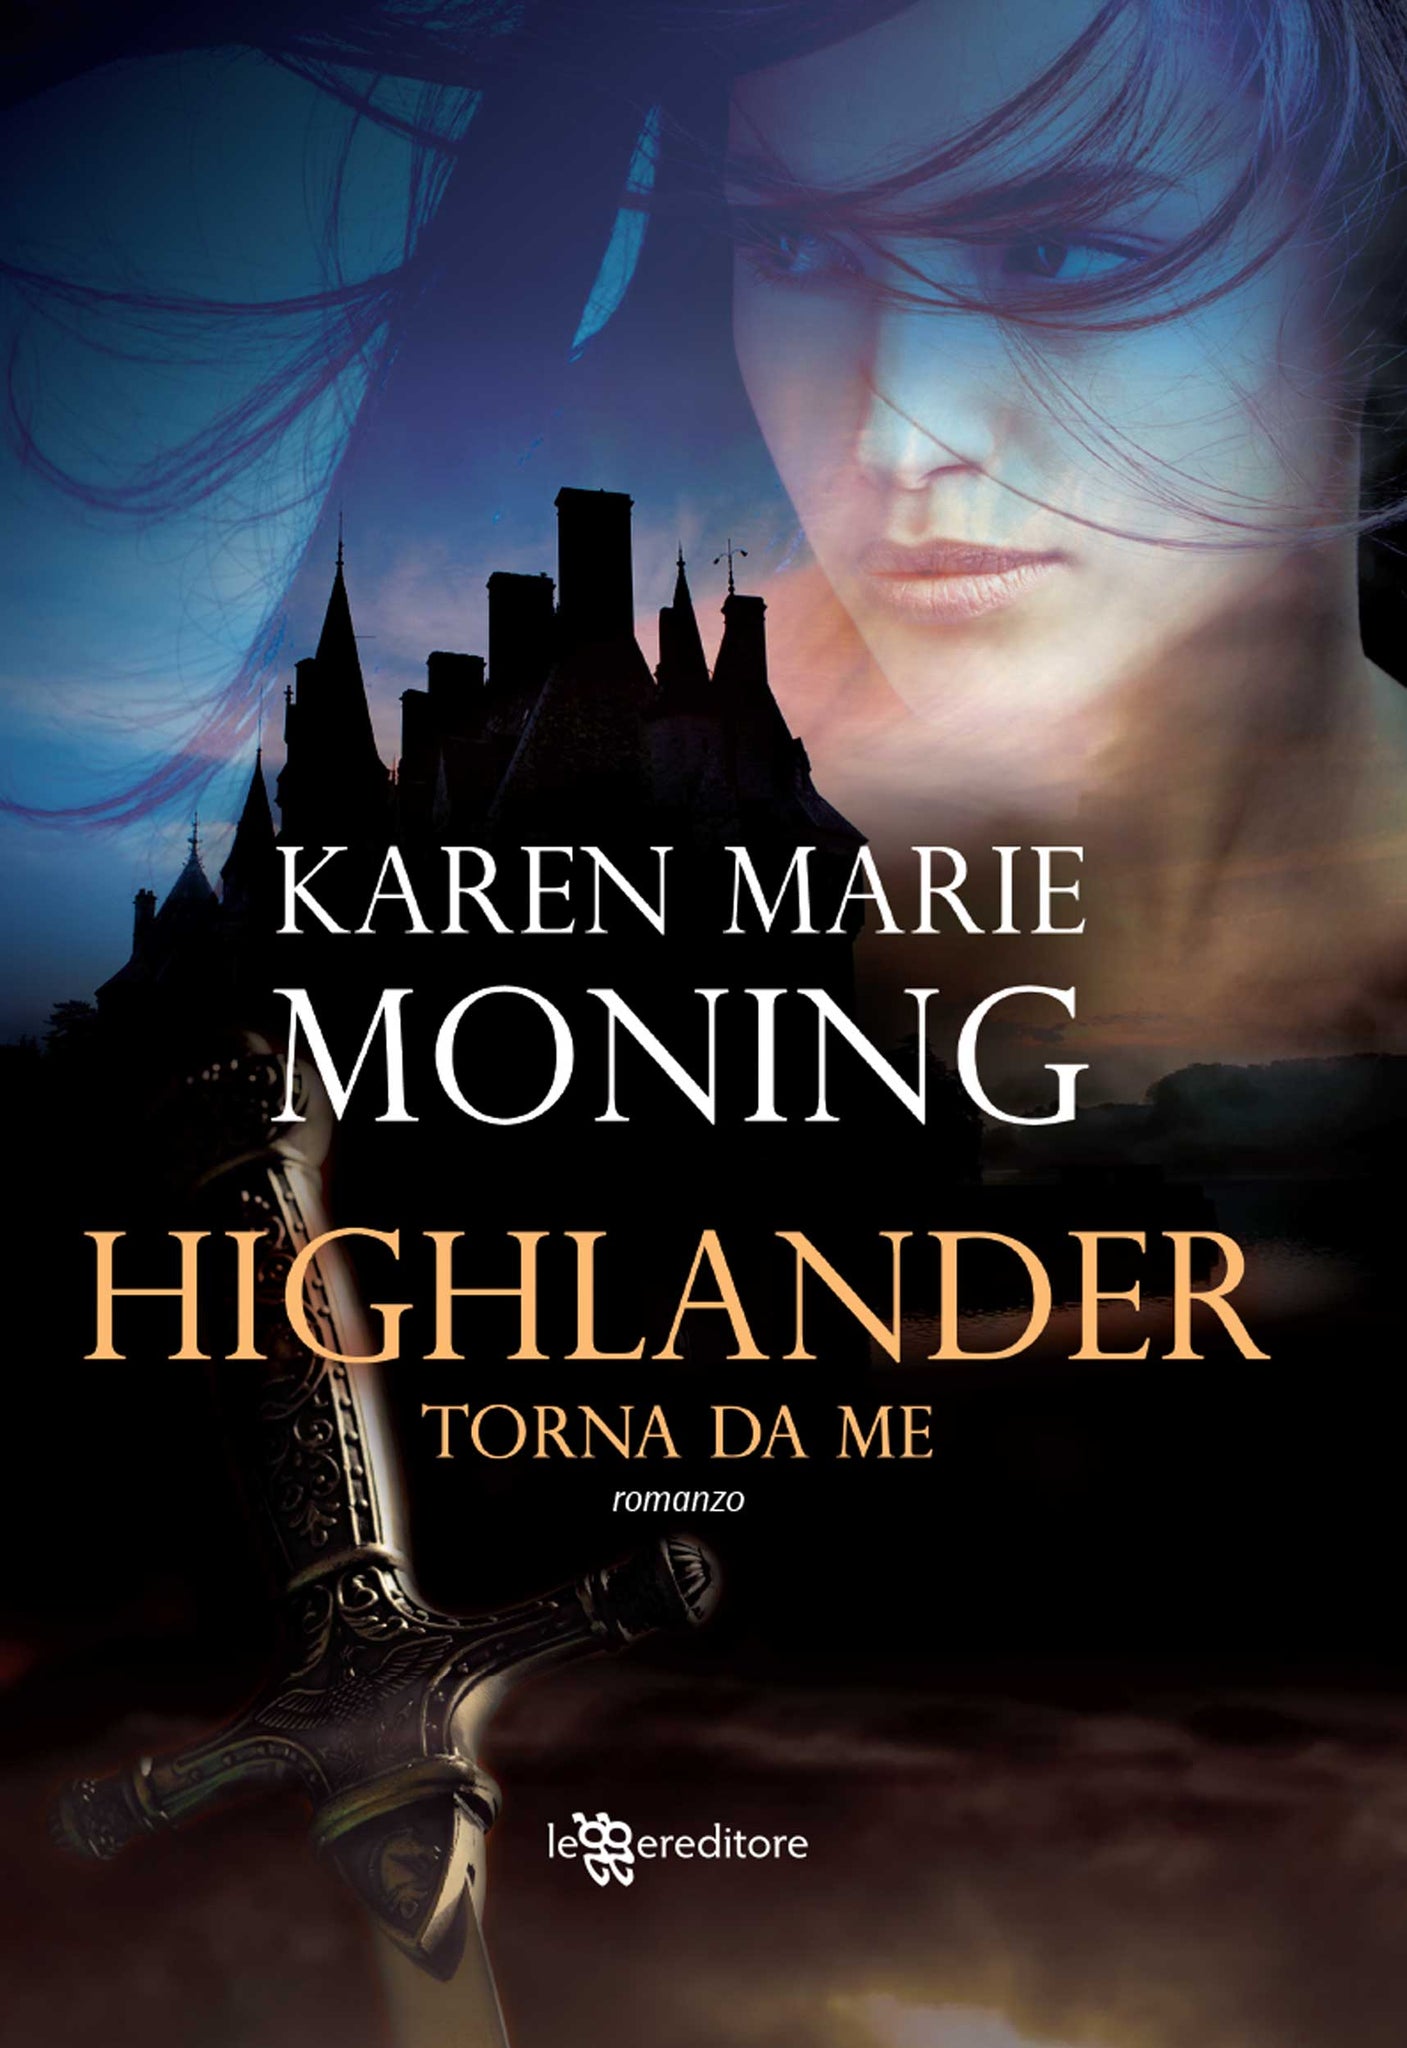 Highlander - Torna da me (Highlander #2)